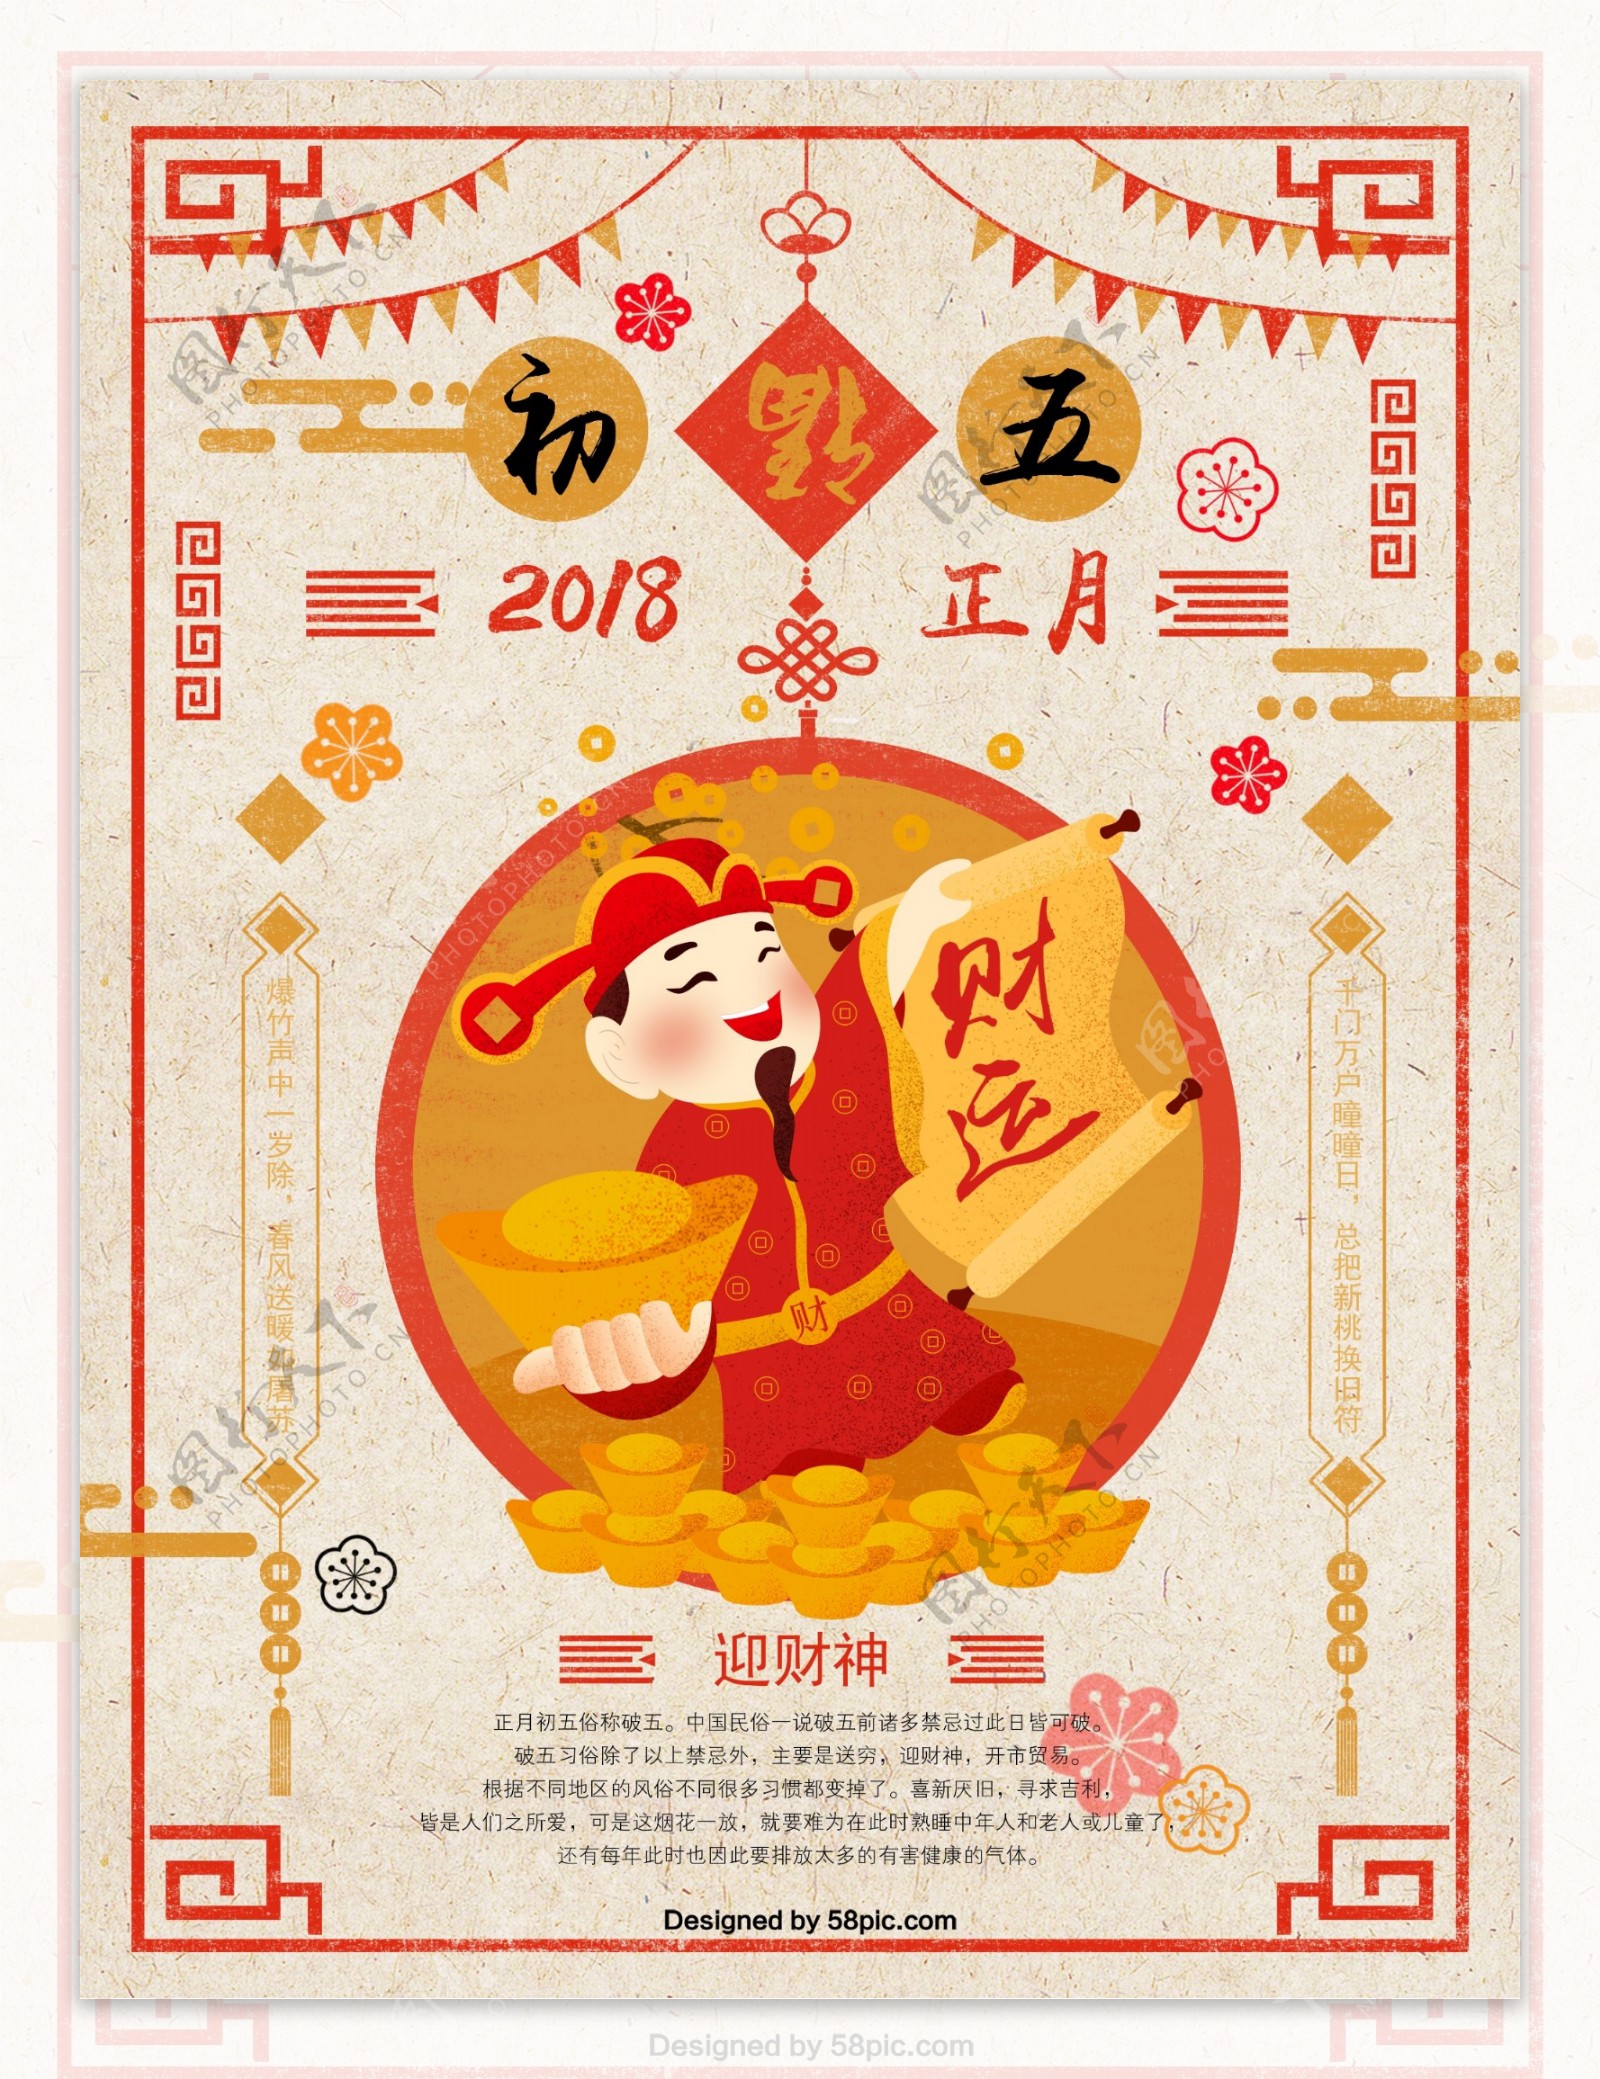 春节正月初五迎财神原创插画手绘海报